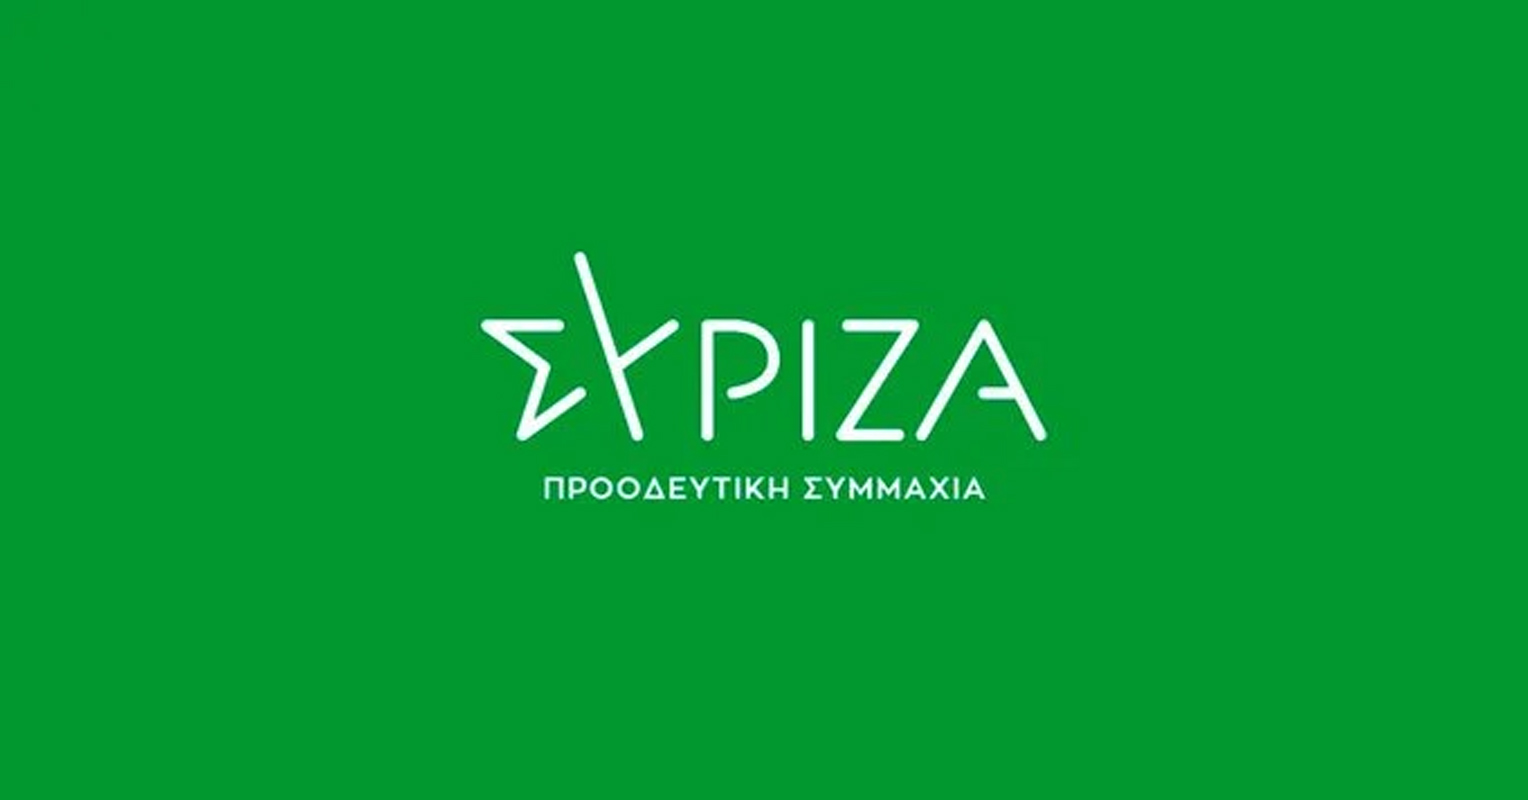 ΣΥΡΙΖΑ:Τροπολογία για μείωση ΦΠΑ στα τρόφιμα και Ειδικού Φόρου Κατανάλωσης στα καύσιμα